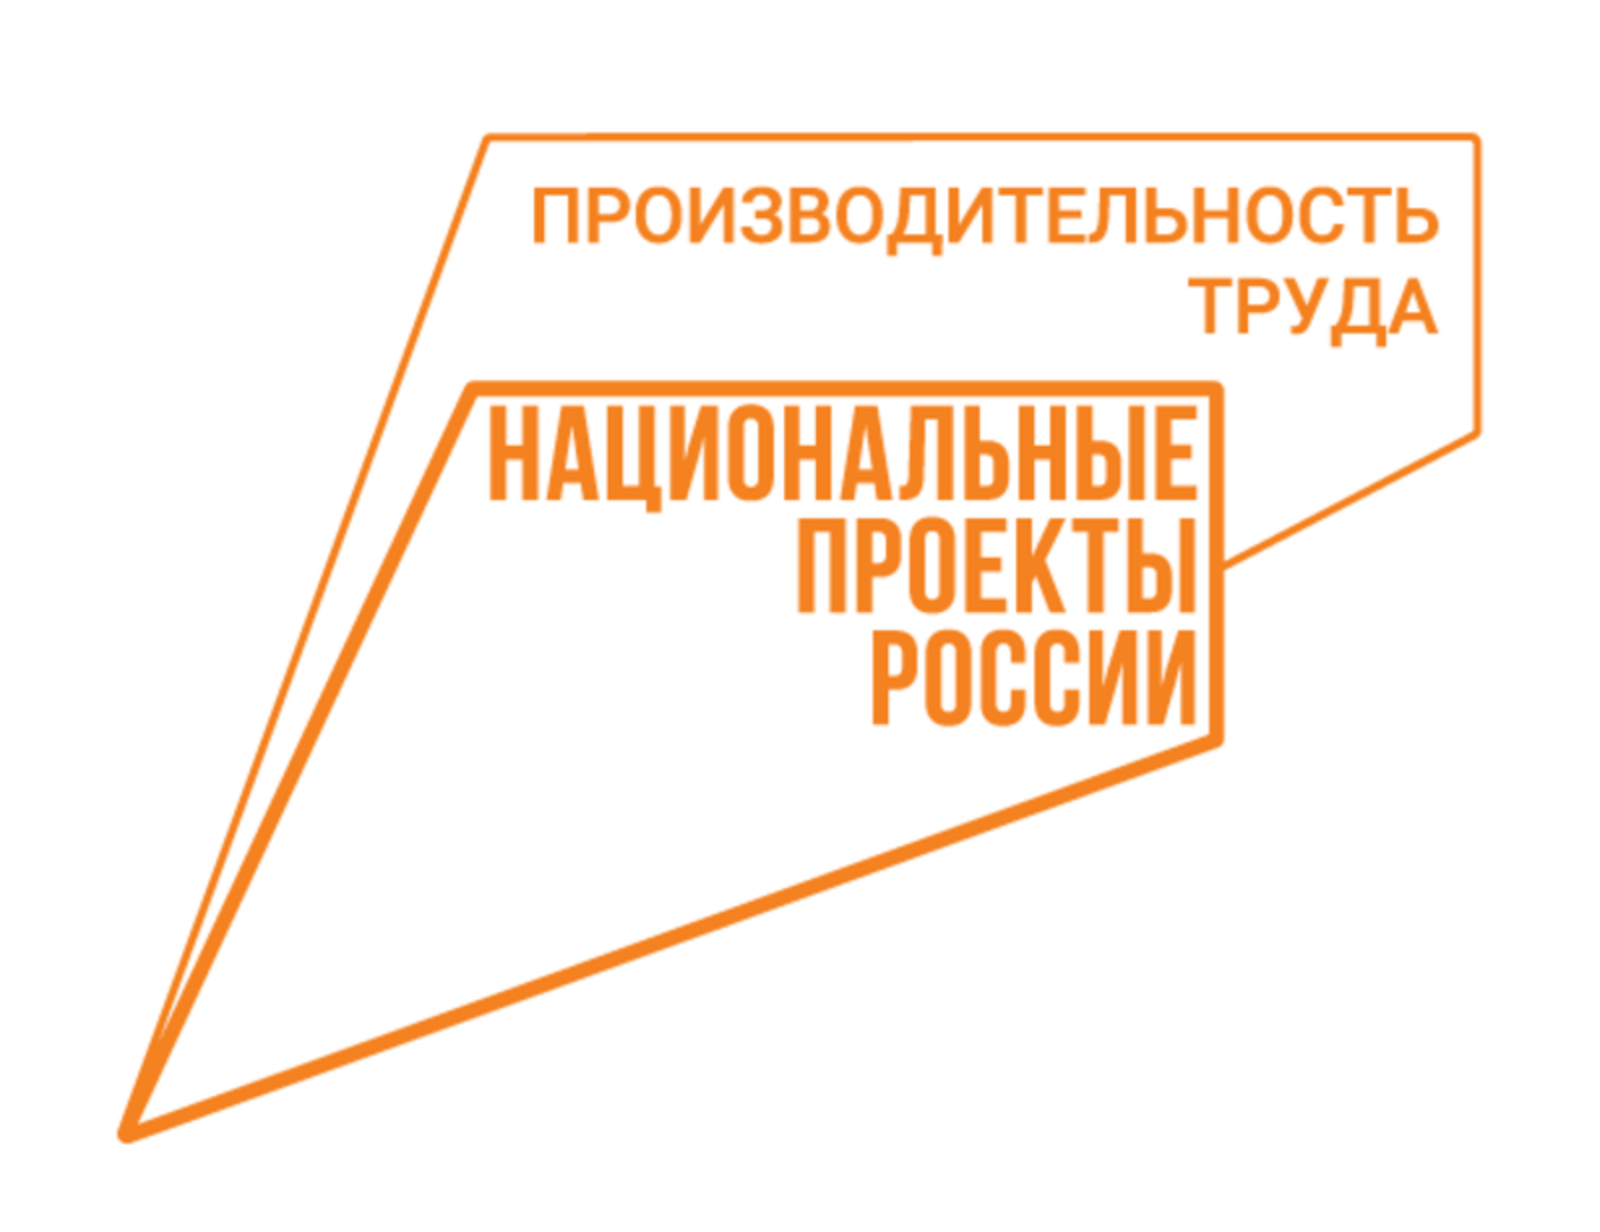 Участники нацпроекта «Производительность труда» Башкортостана вновь посетят ПАО «КАМАЗ» для обмена опытом